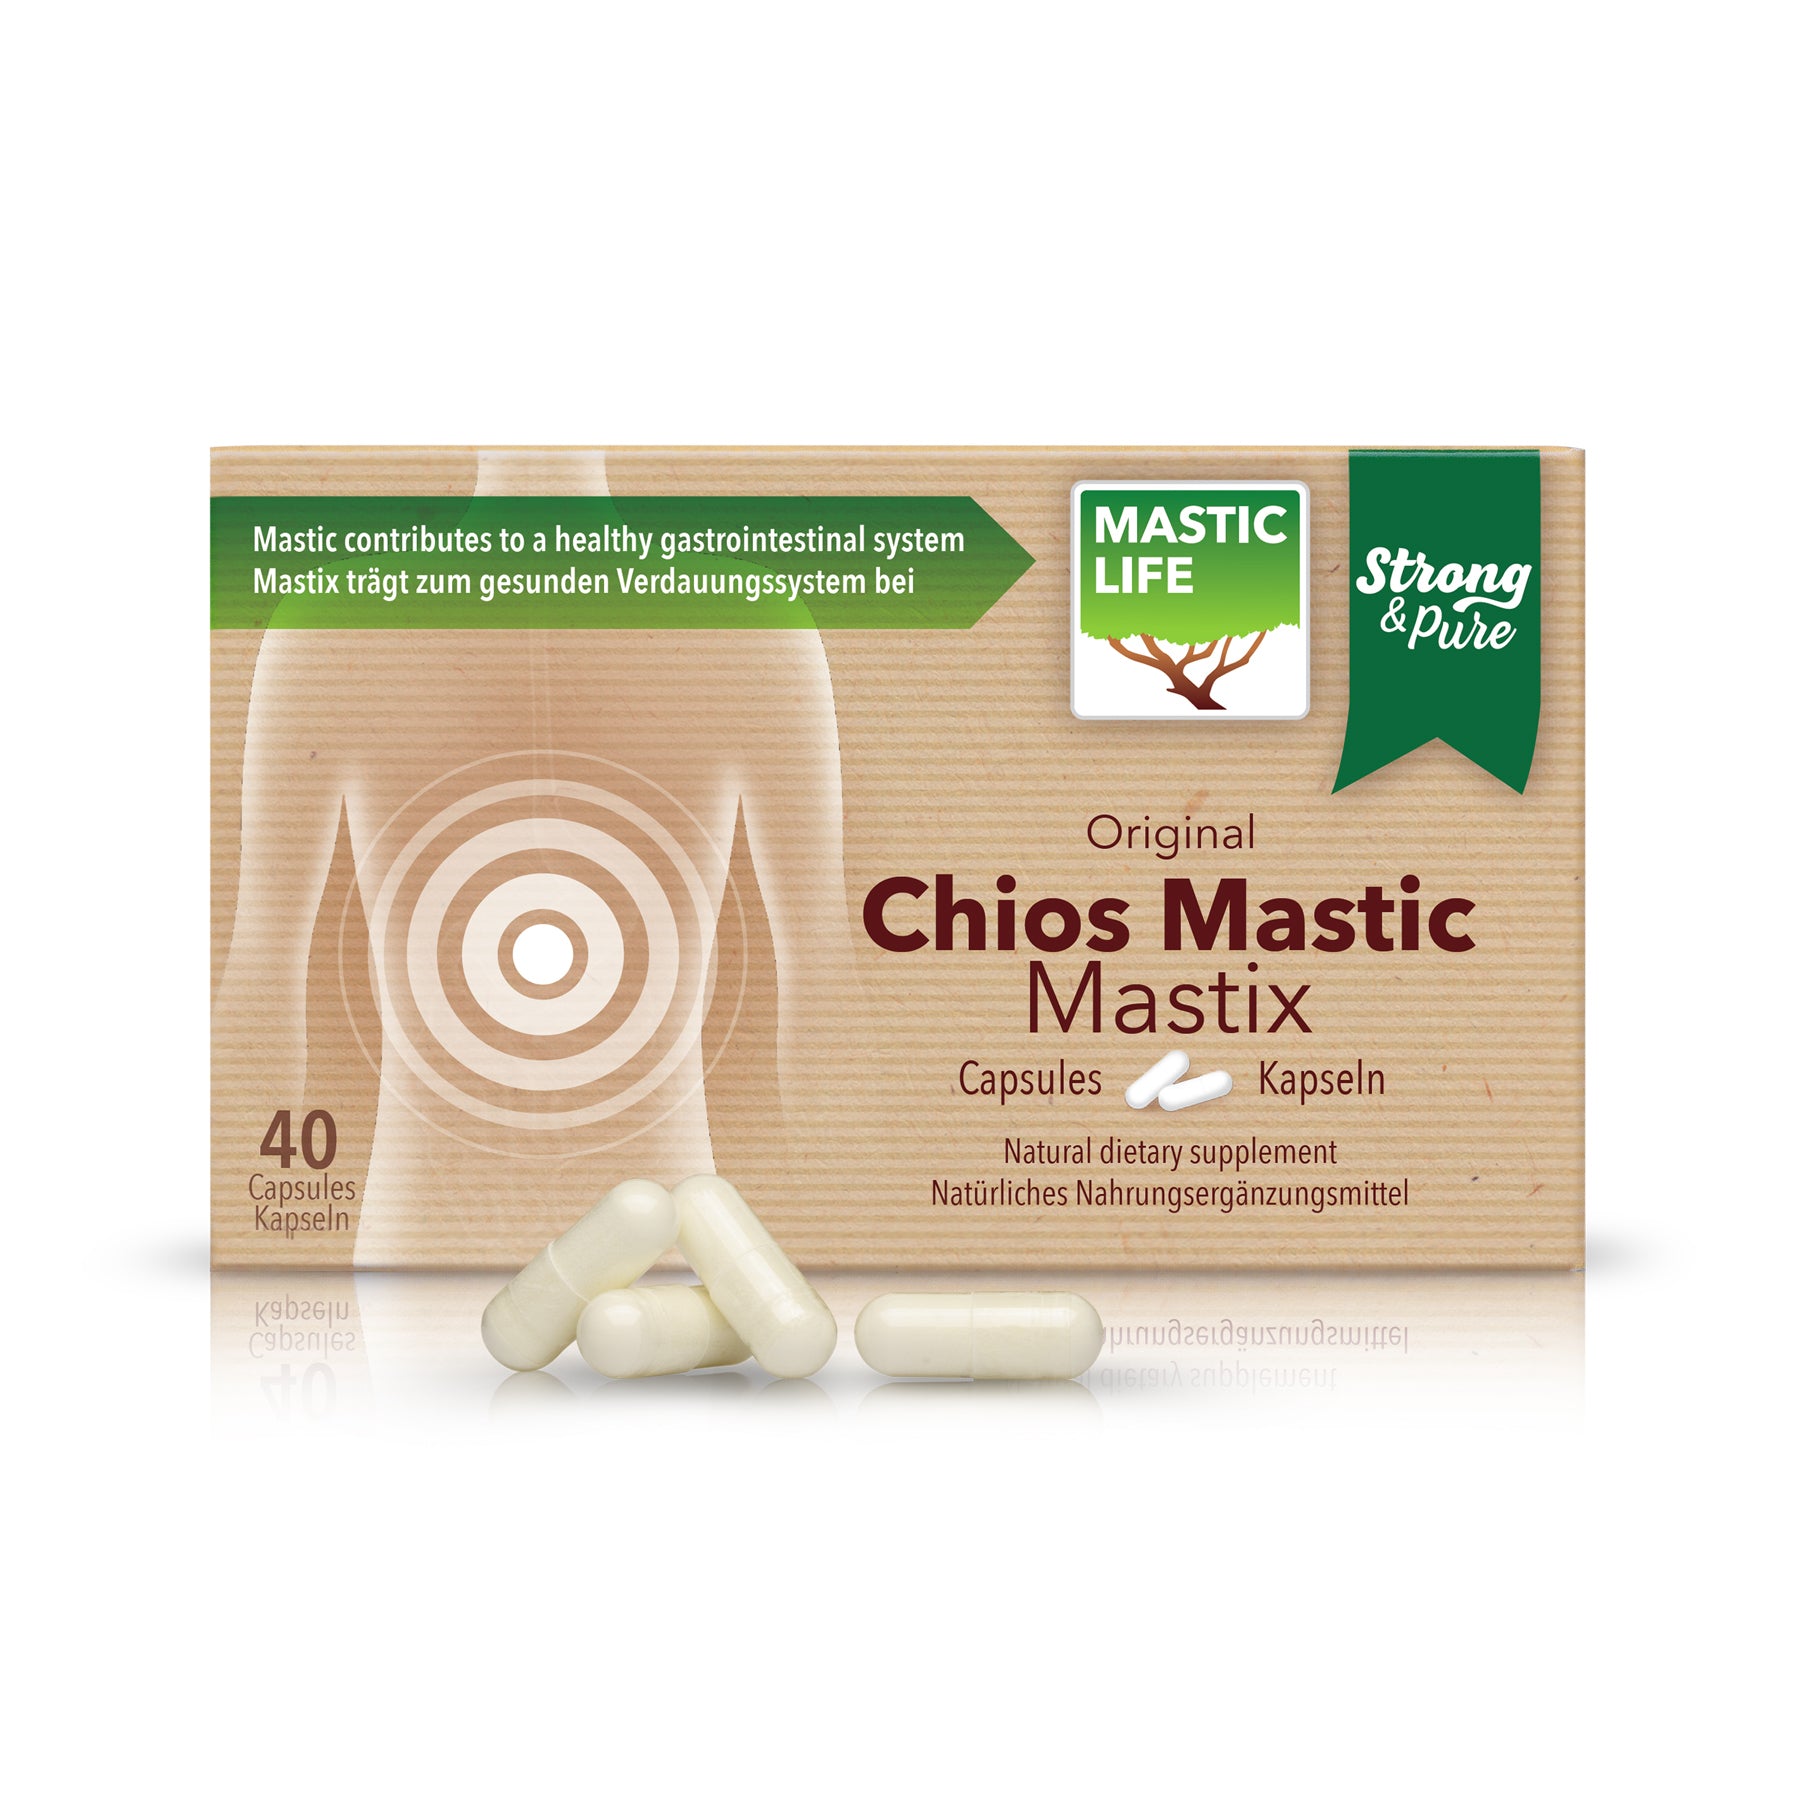 Is Chios Mastic Gum Sustainable? – Mastic Masticlife